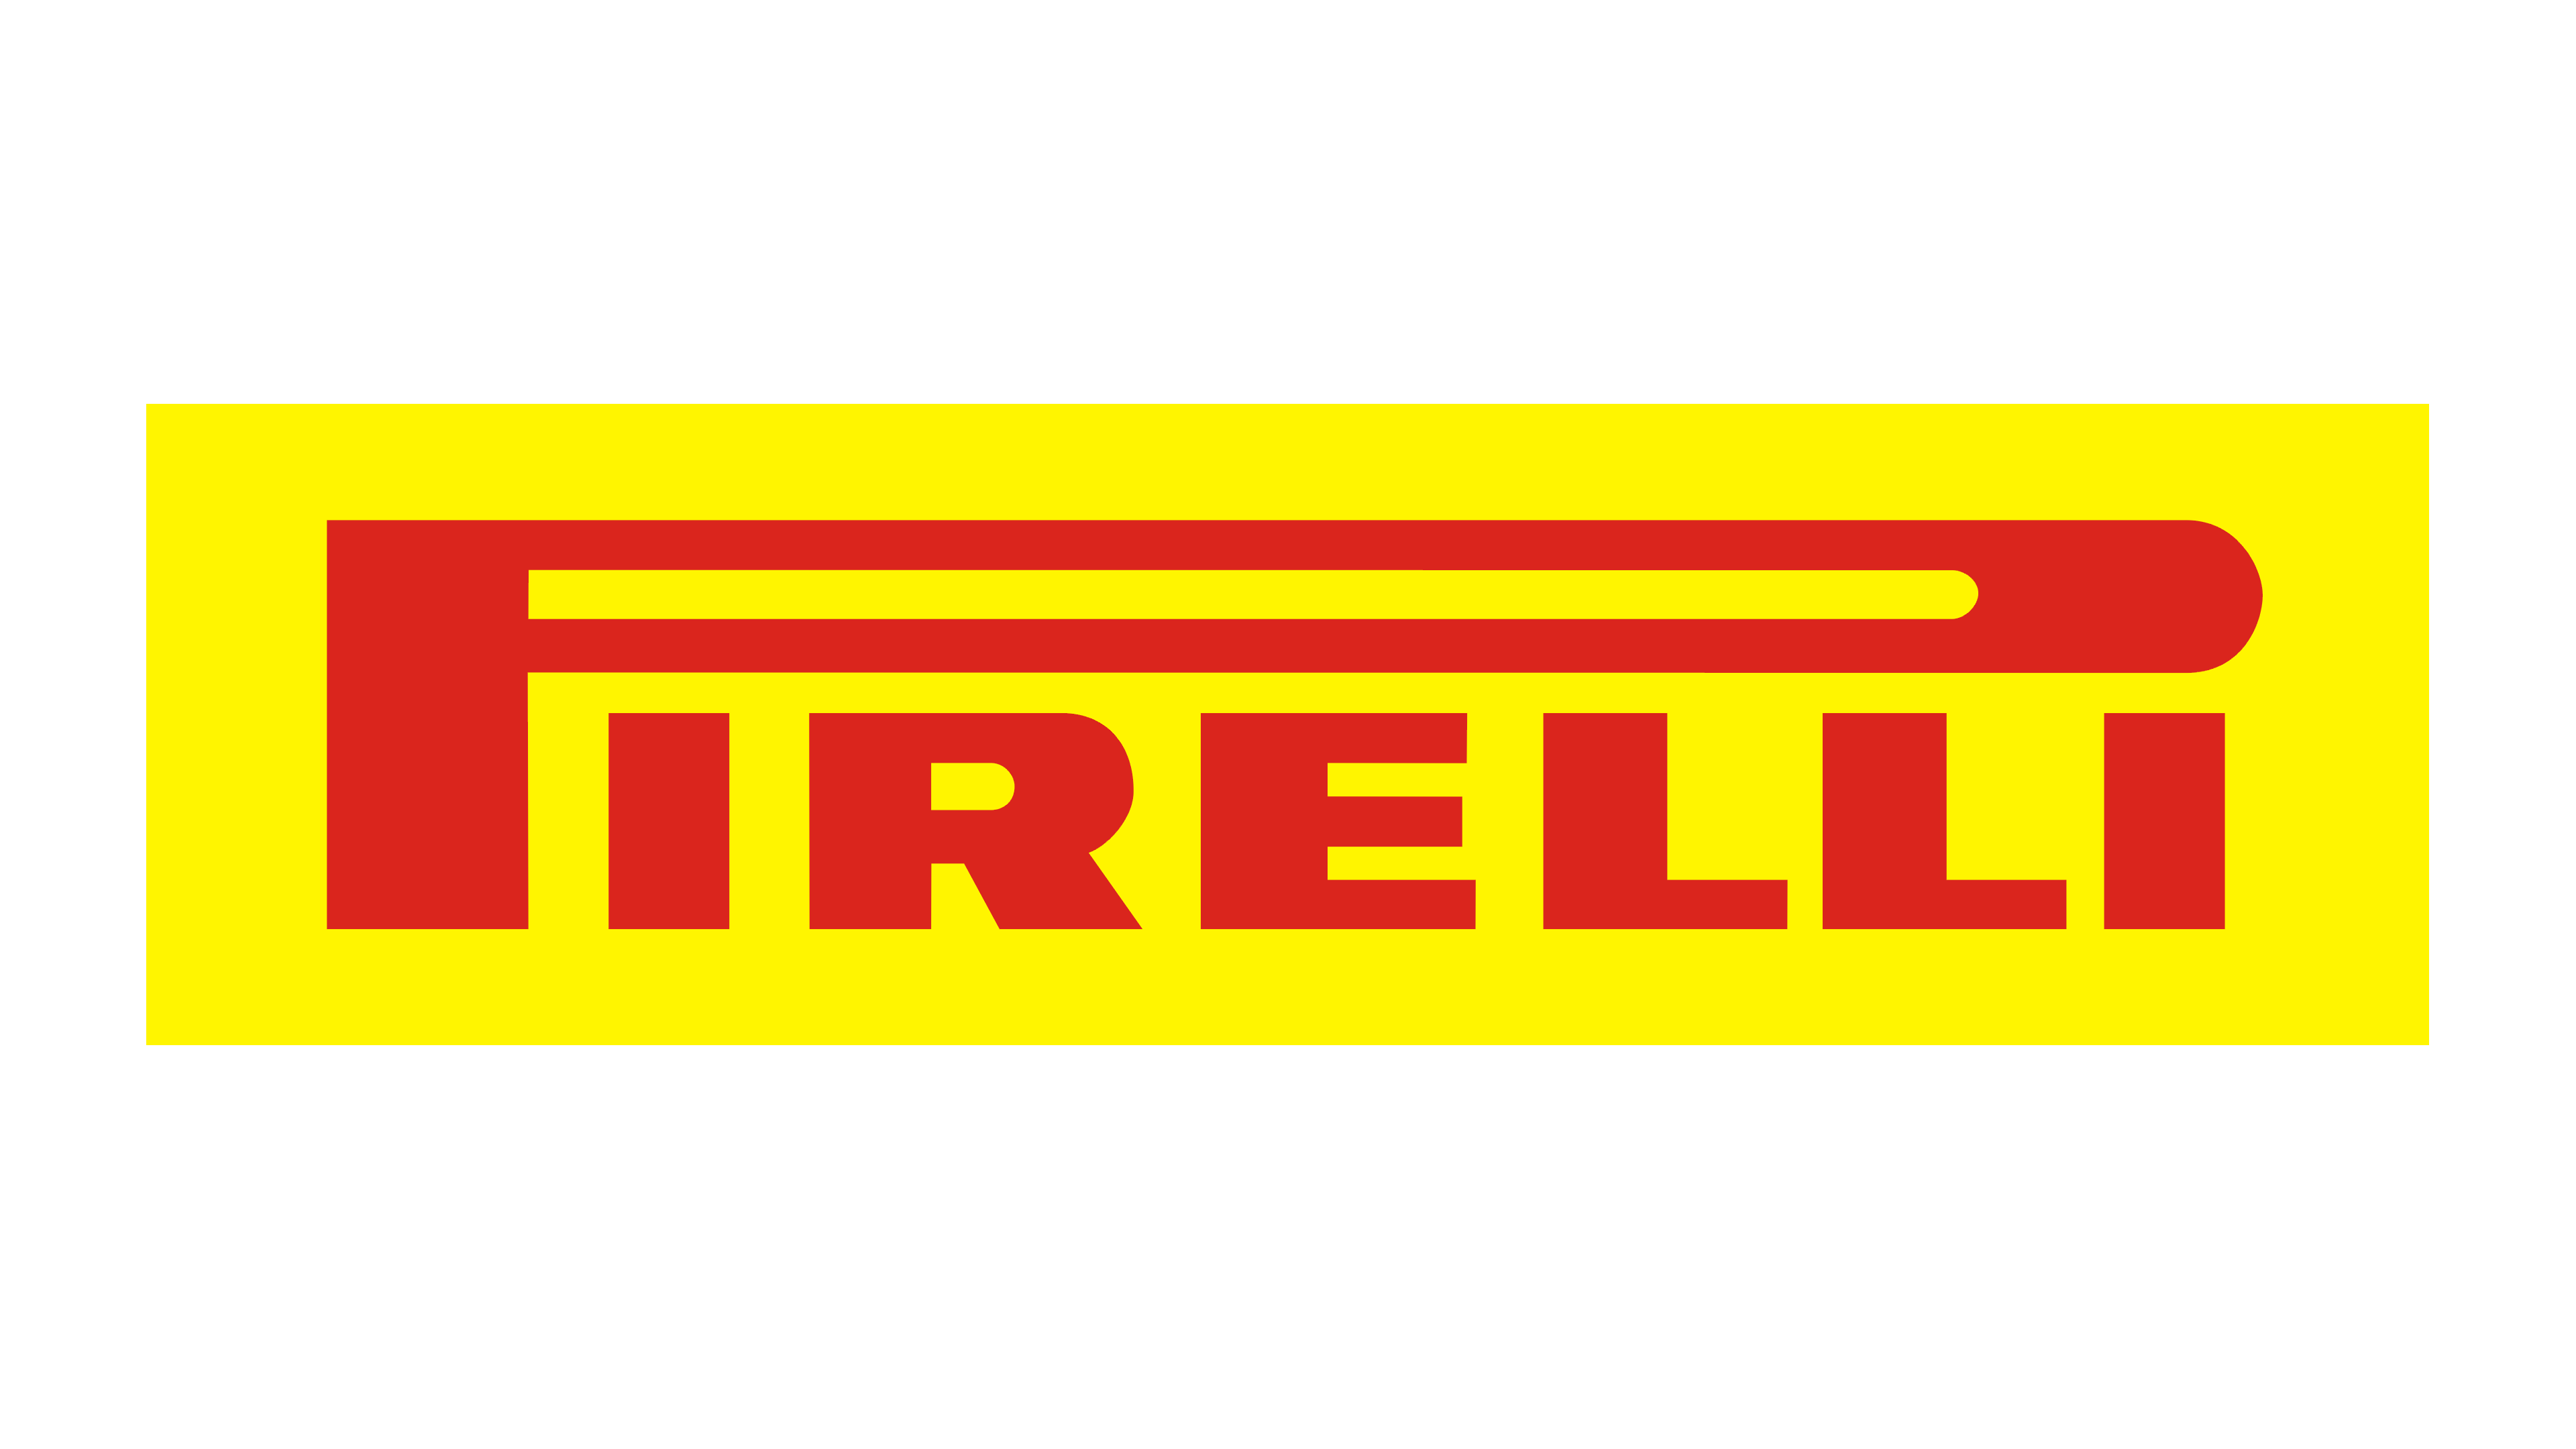 Pirelli Tire LLC